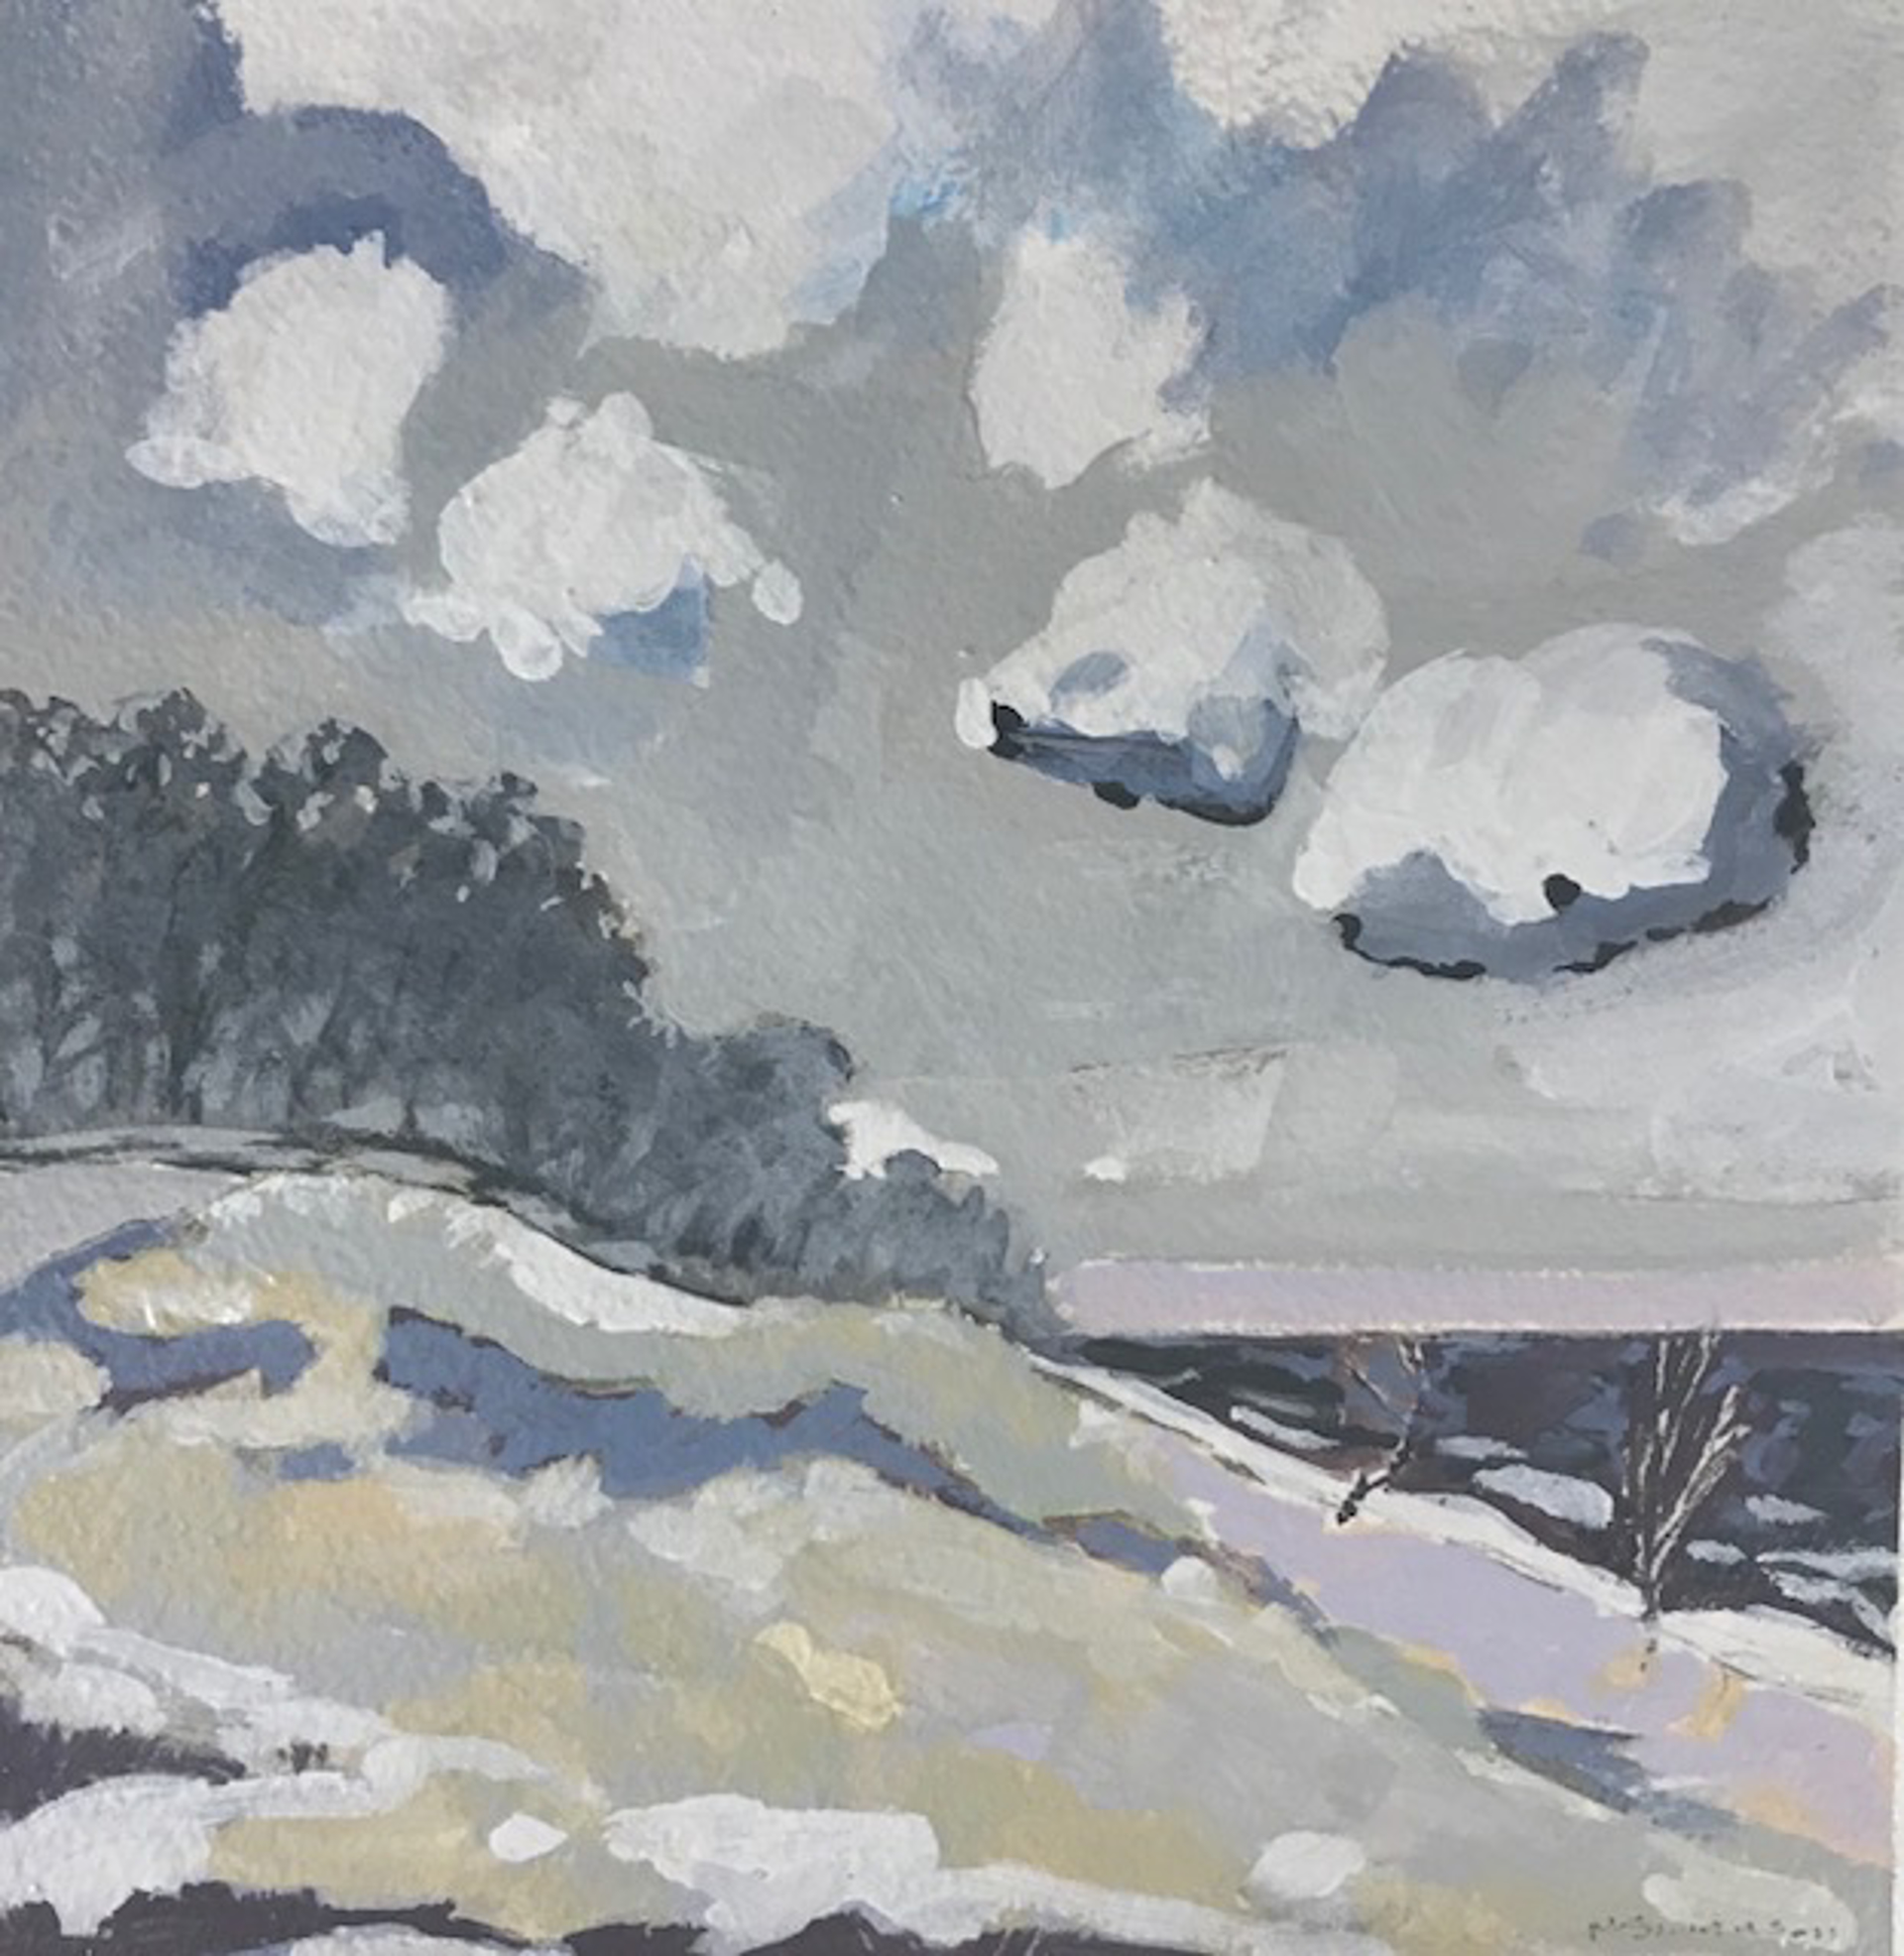 Winter Walk by Matthew Swanson